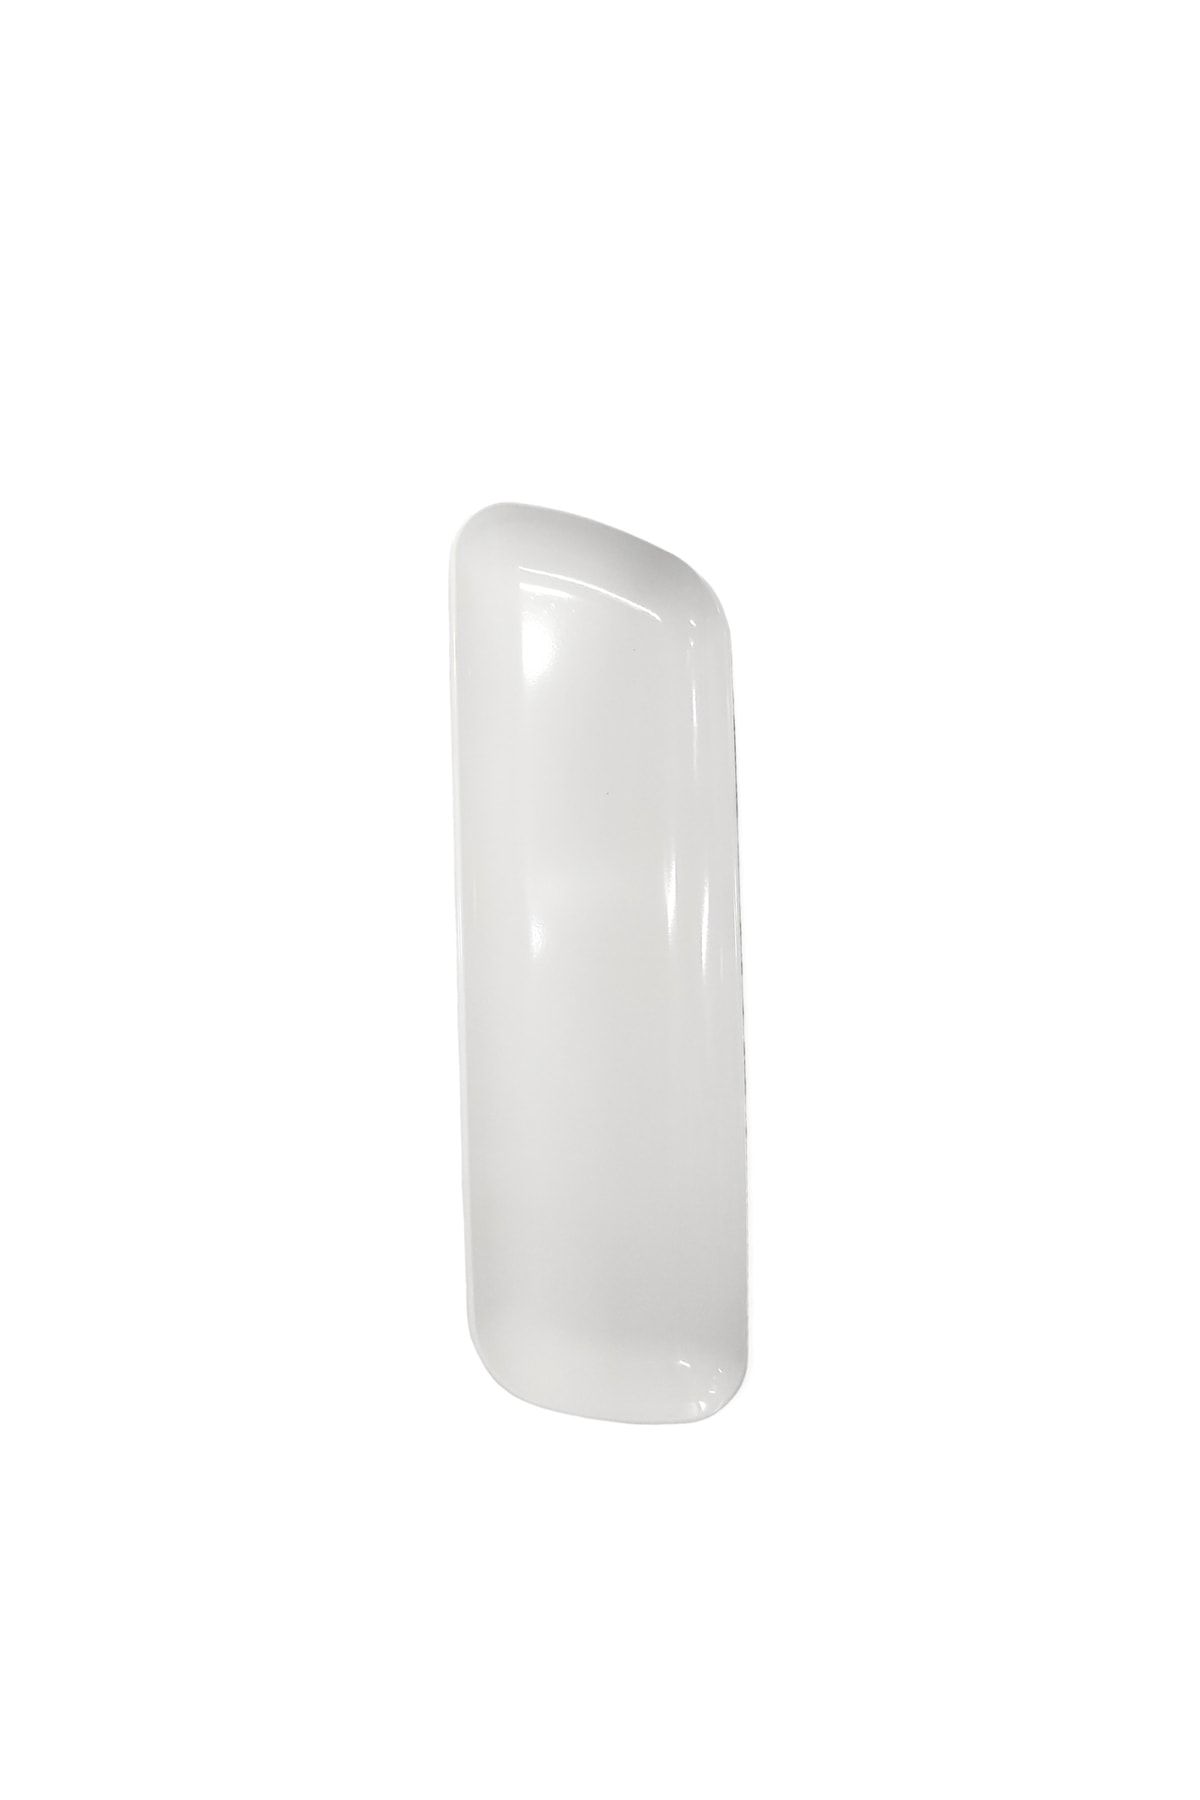 Matar Endüstriyel Mutfak Ekipmanları Thermo Melamin Beyaz Perspektif 46x15cm Sunum Tabağı 1 Adet